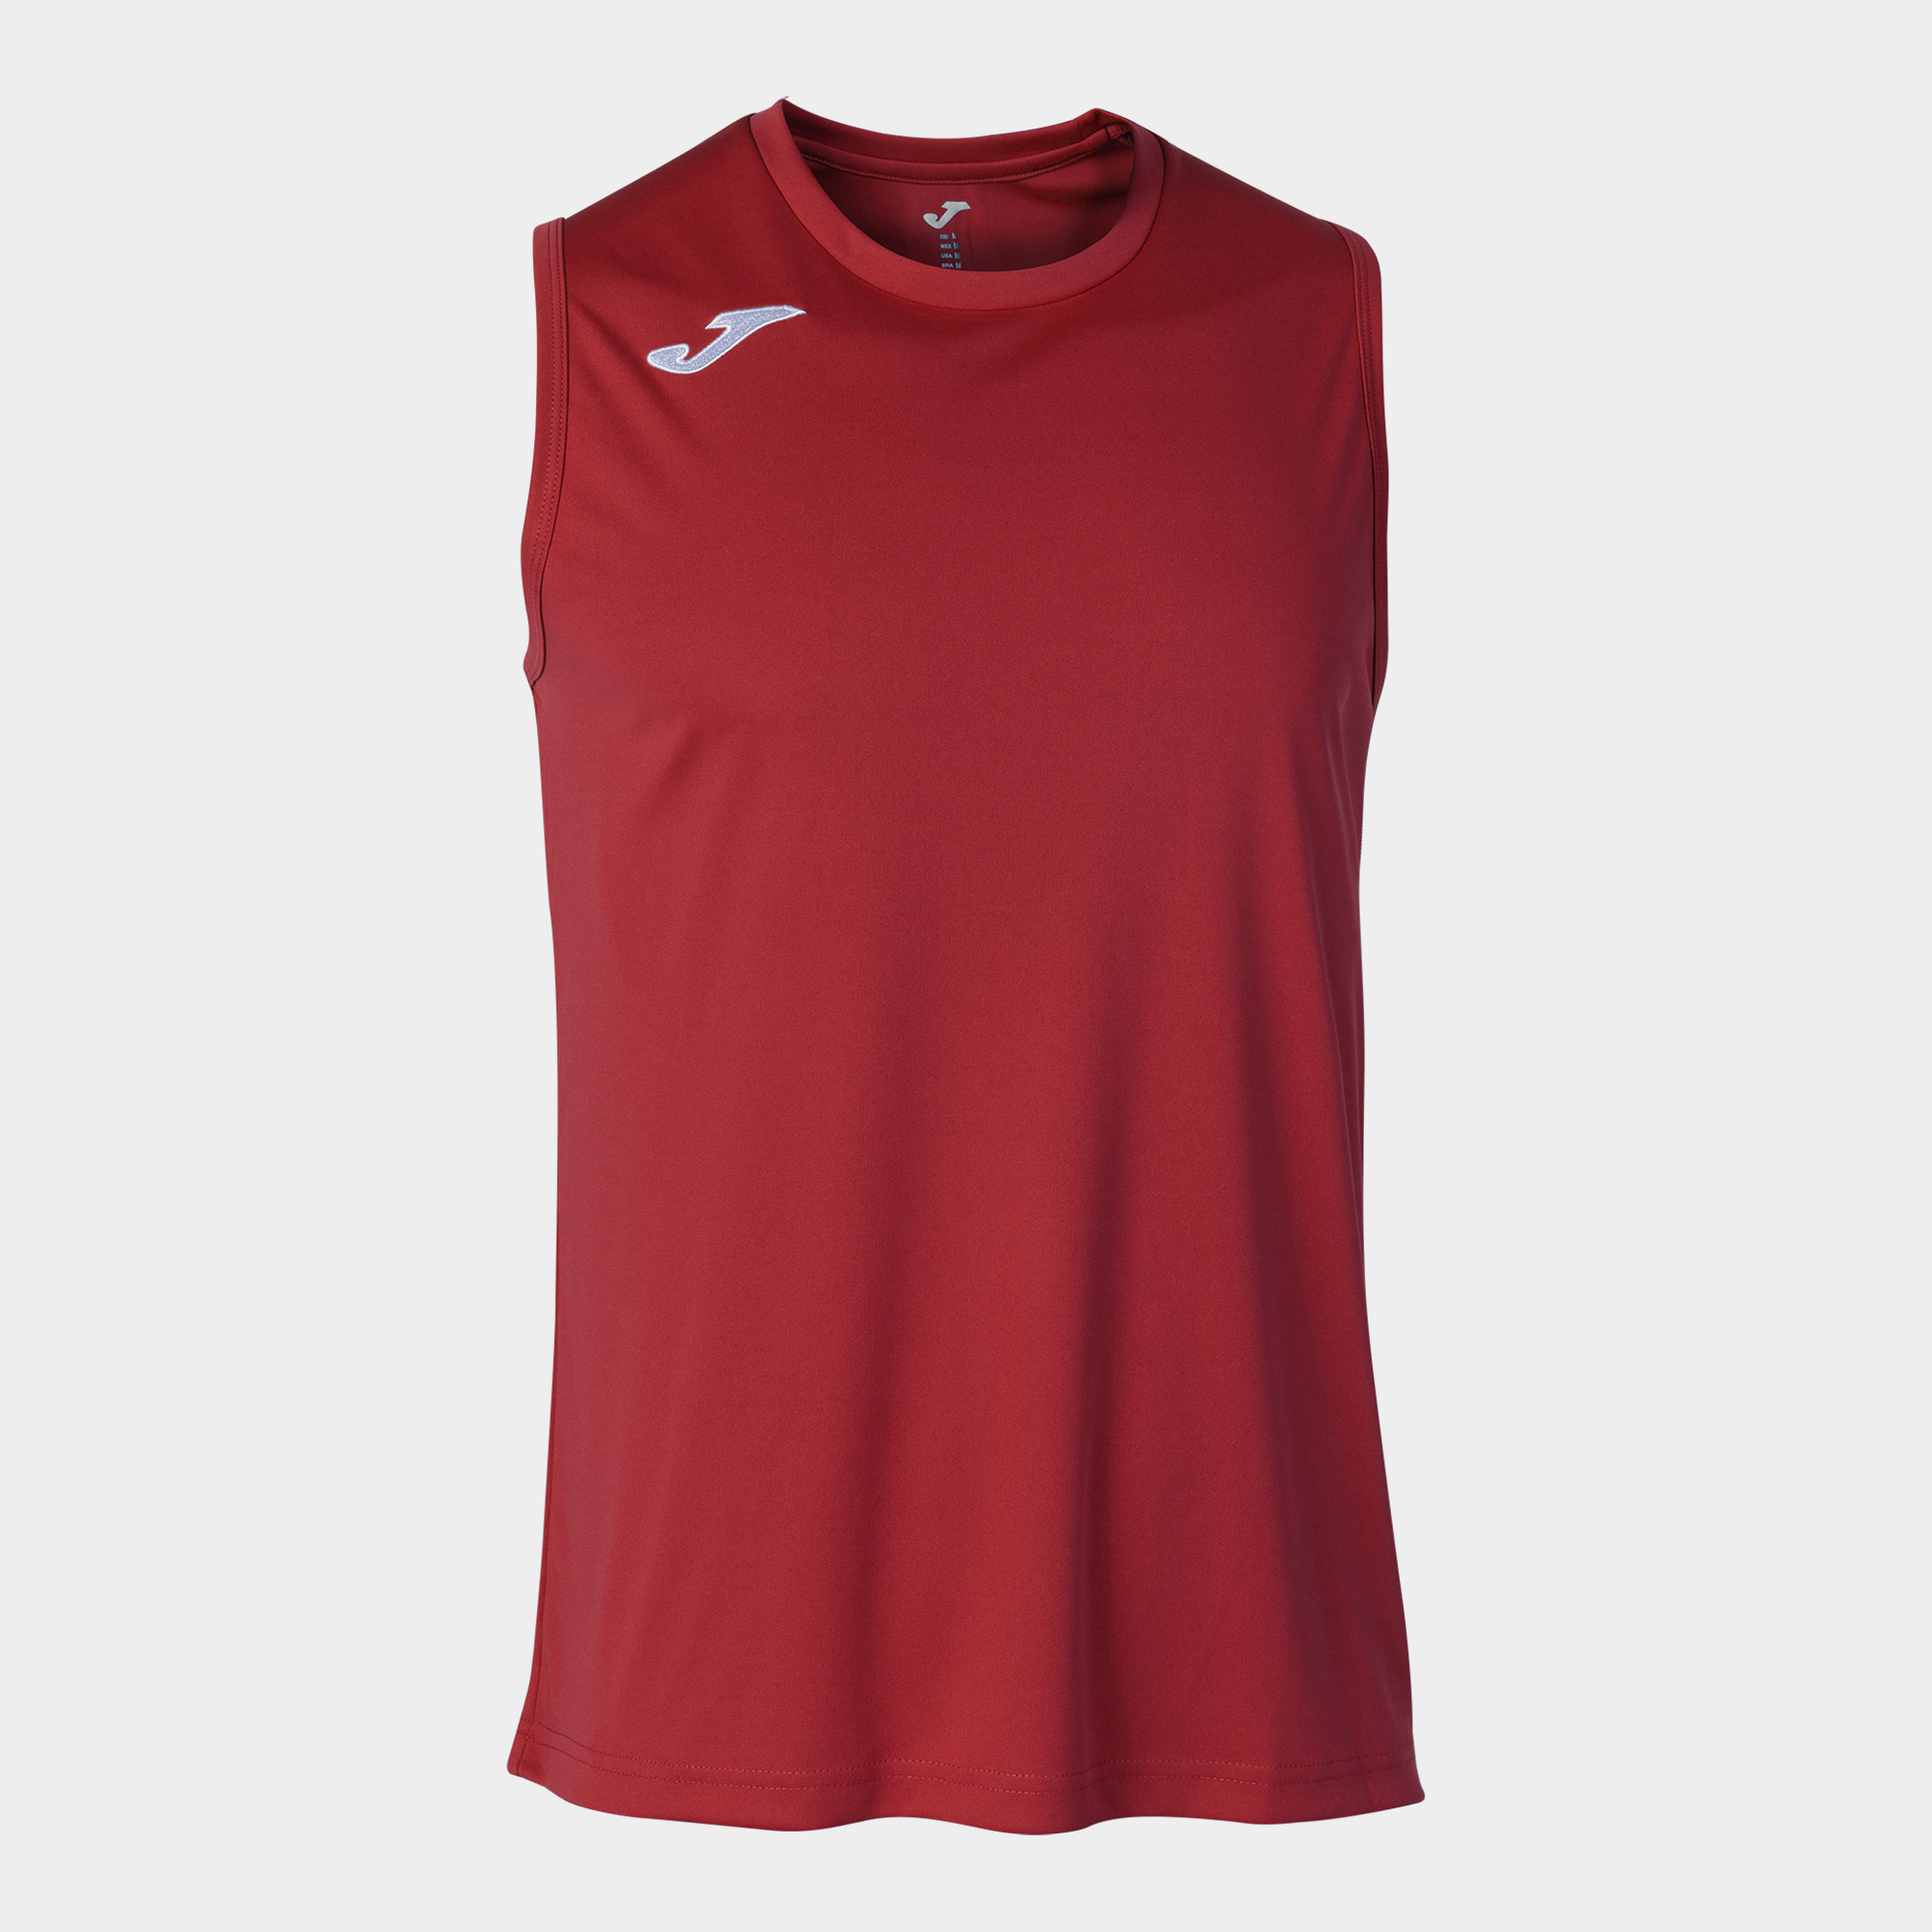 T-shirt De Alça Joma Combi Basket Vermelho - rojo - 